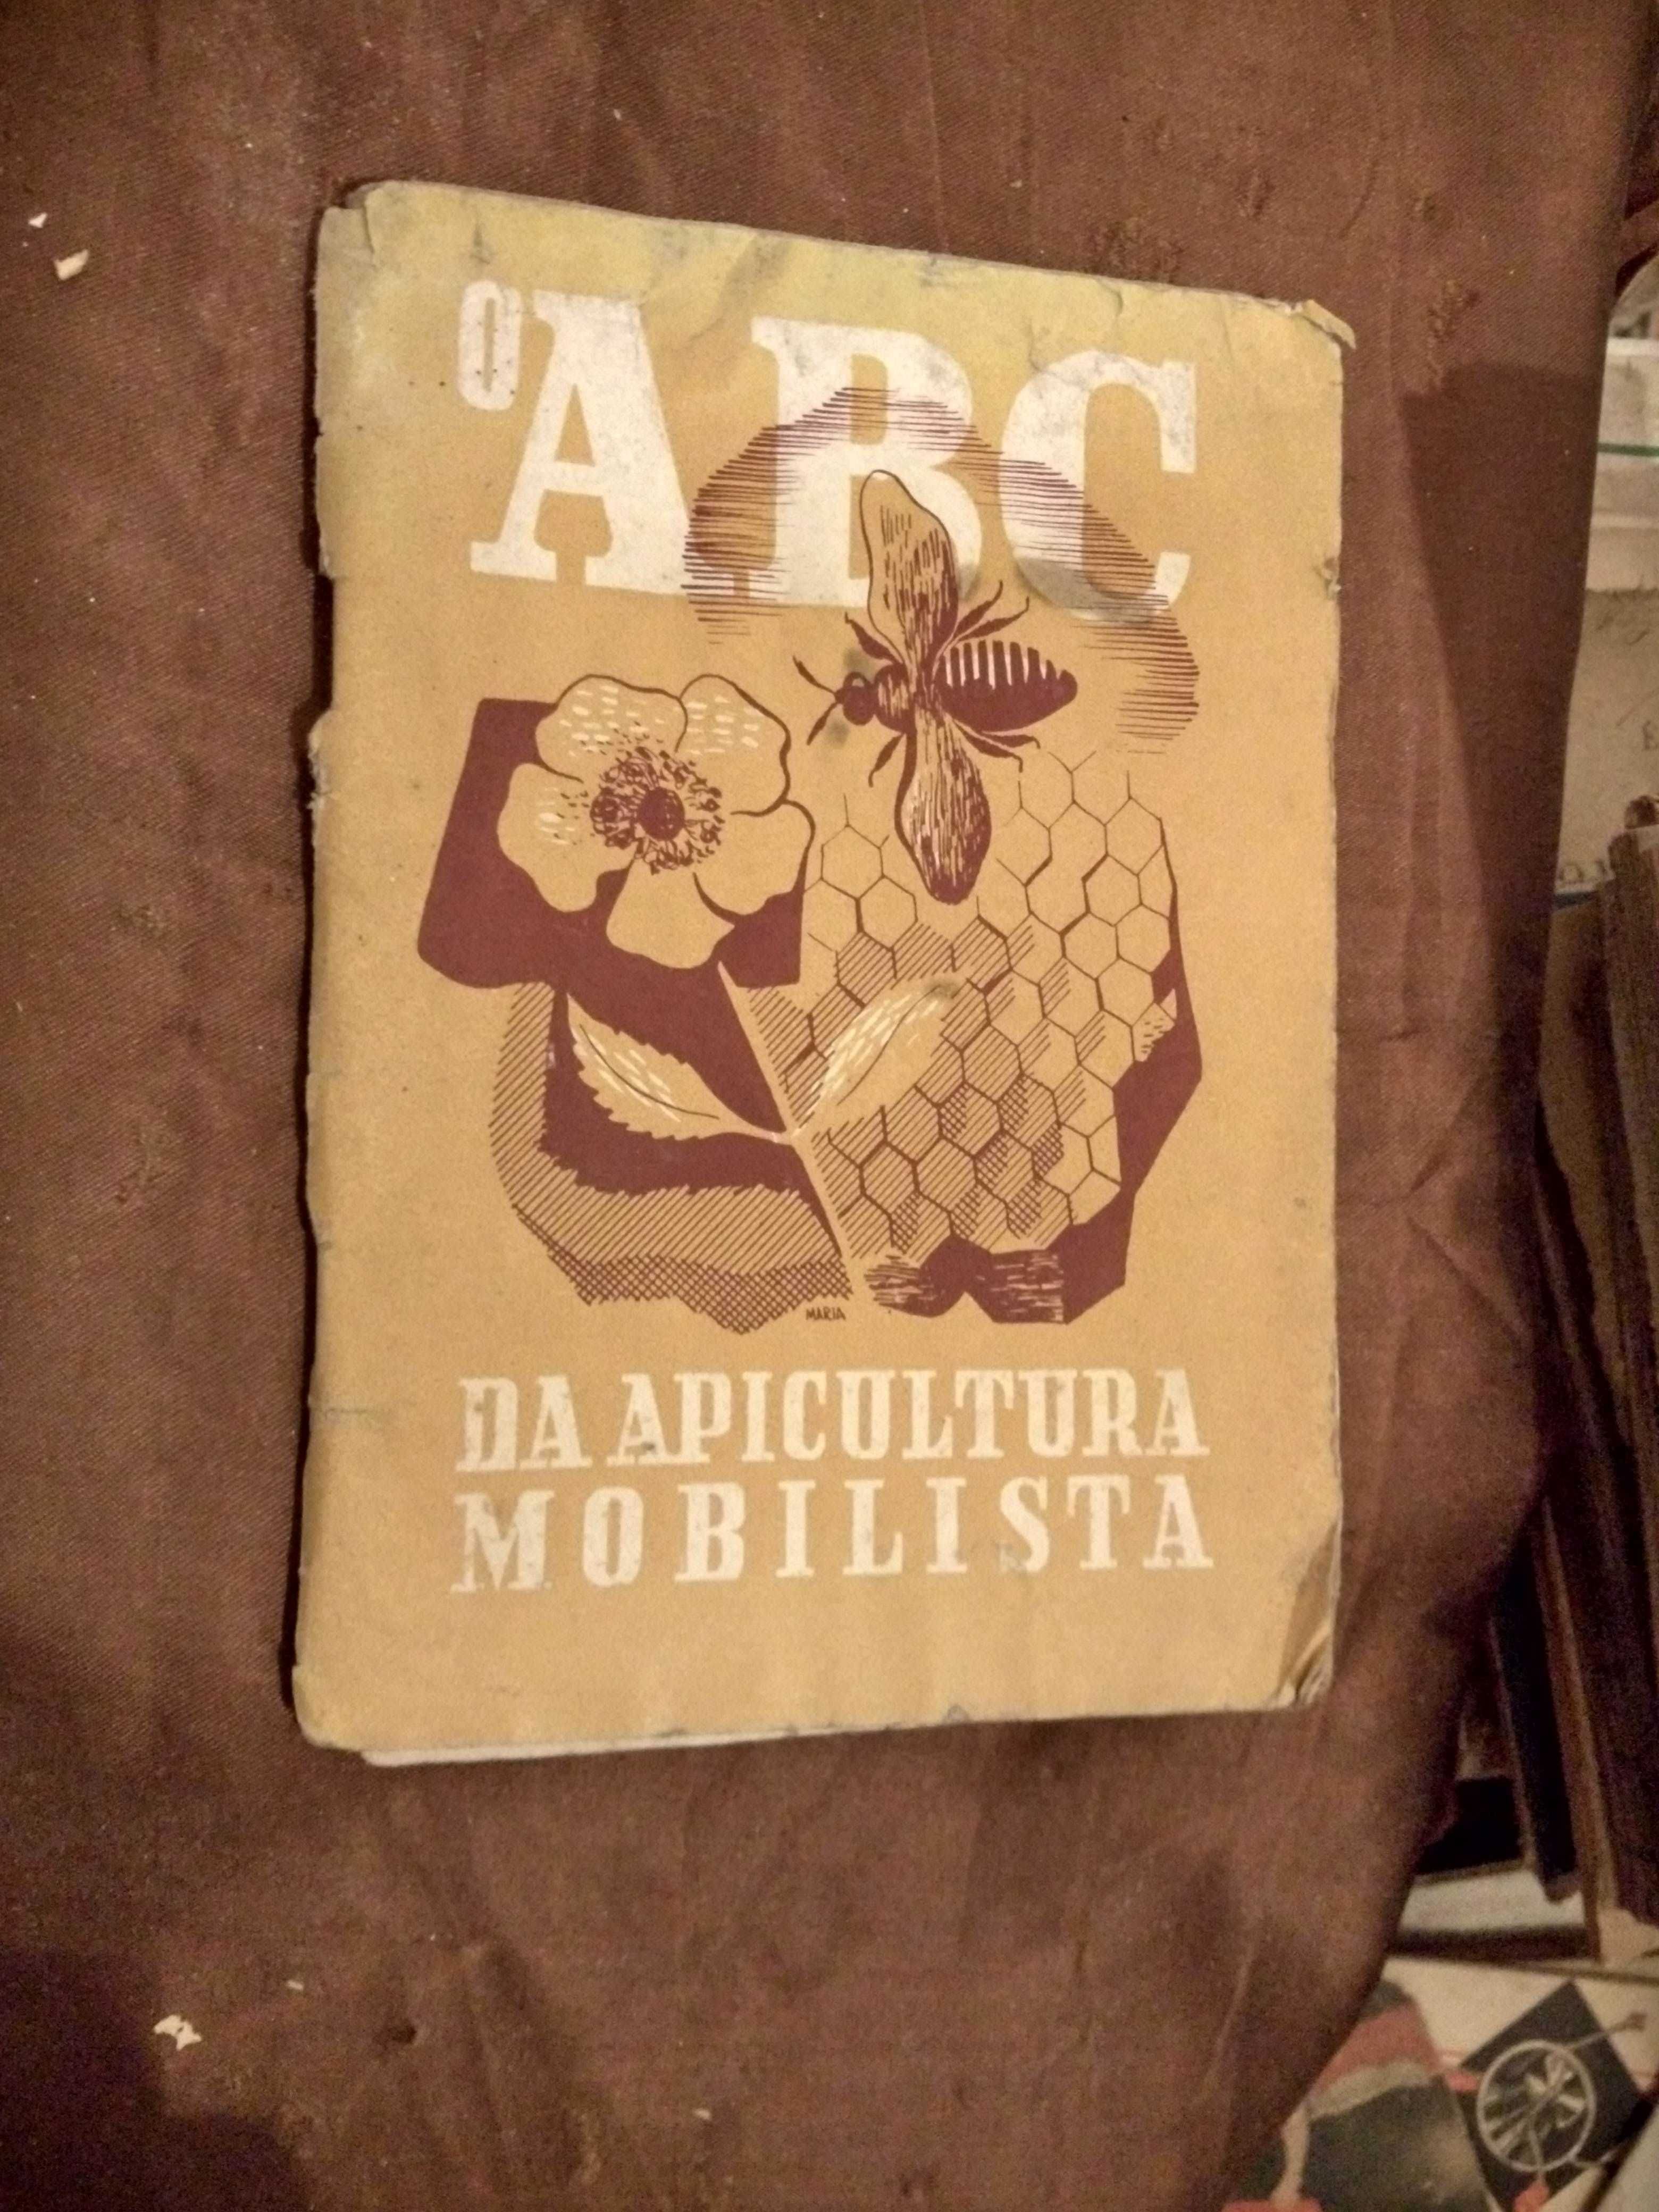 O ABC DA APICULTURA MOBILISTA -Vasco Correia Paixão - (1943)